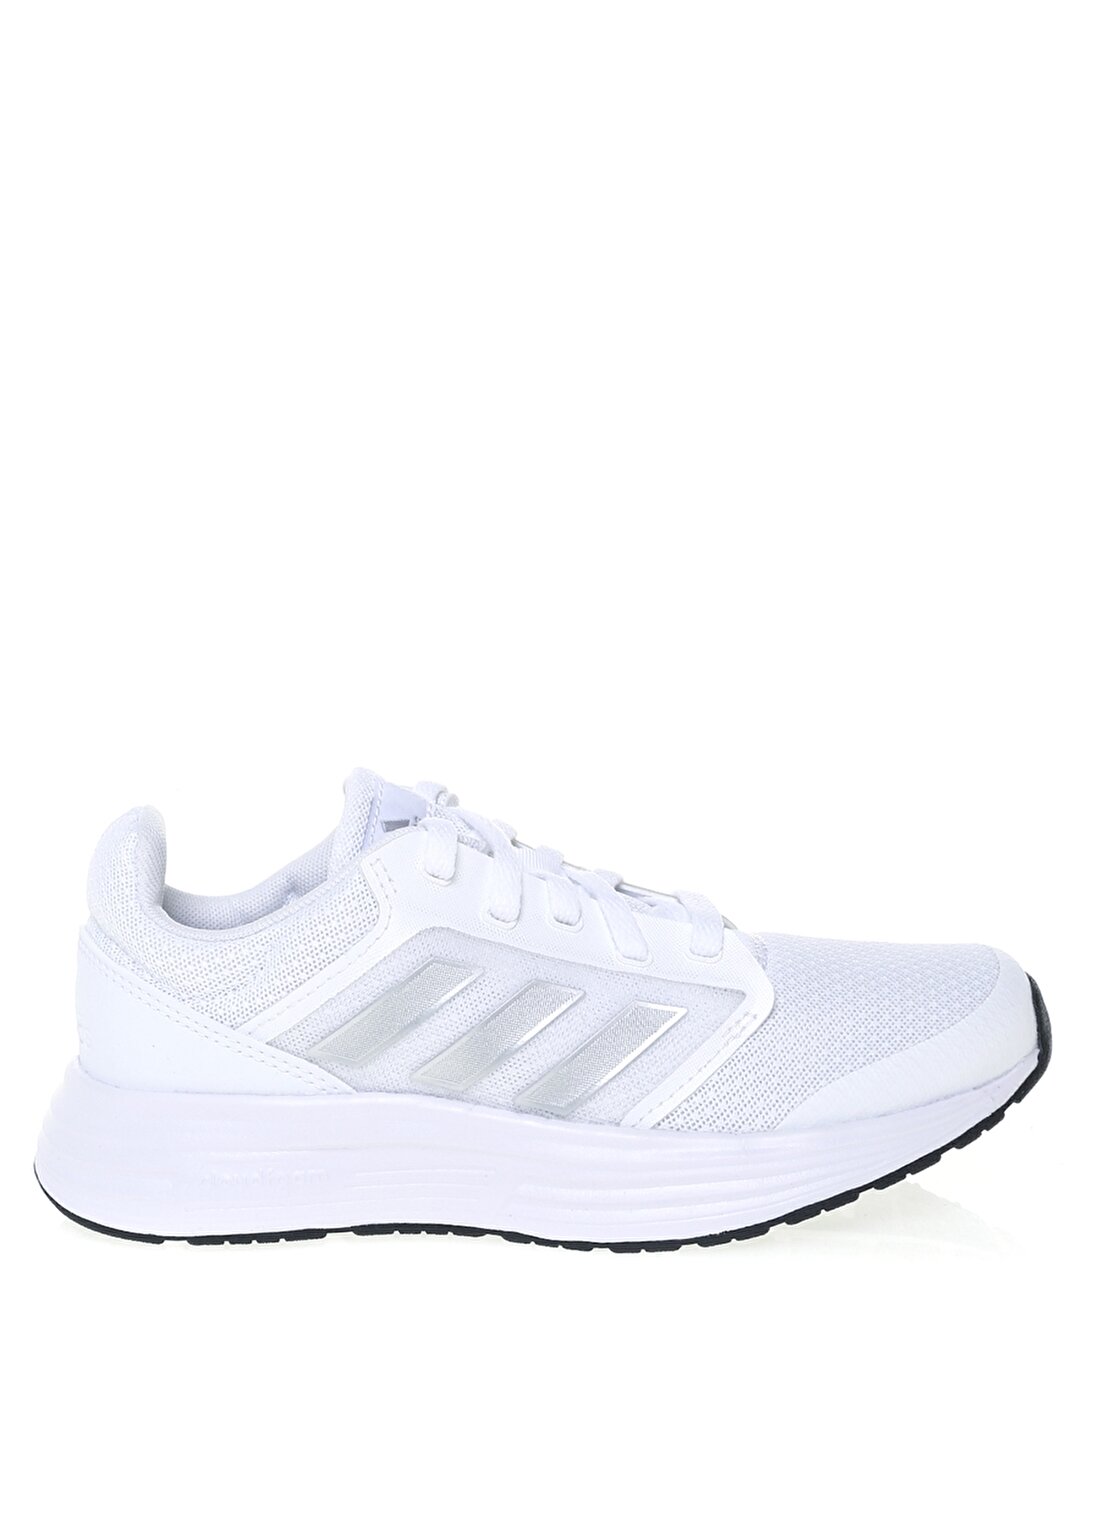 Adidas G55778 Galaxy 5 Beyaz - Gümüş Kadın Koşu Ayakkabısı